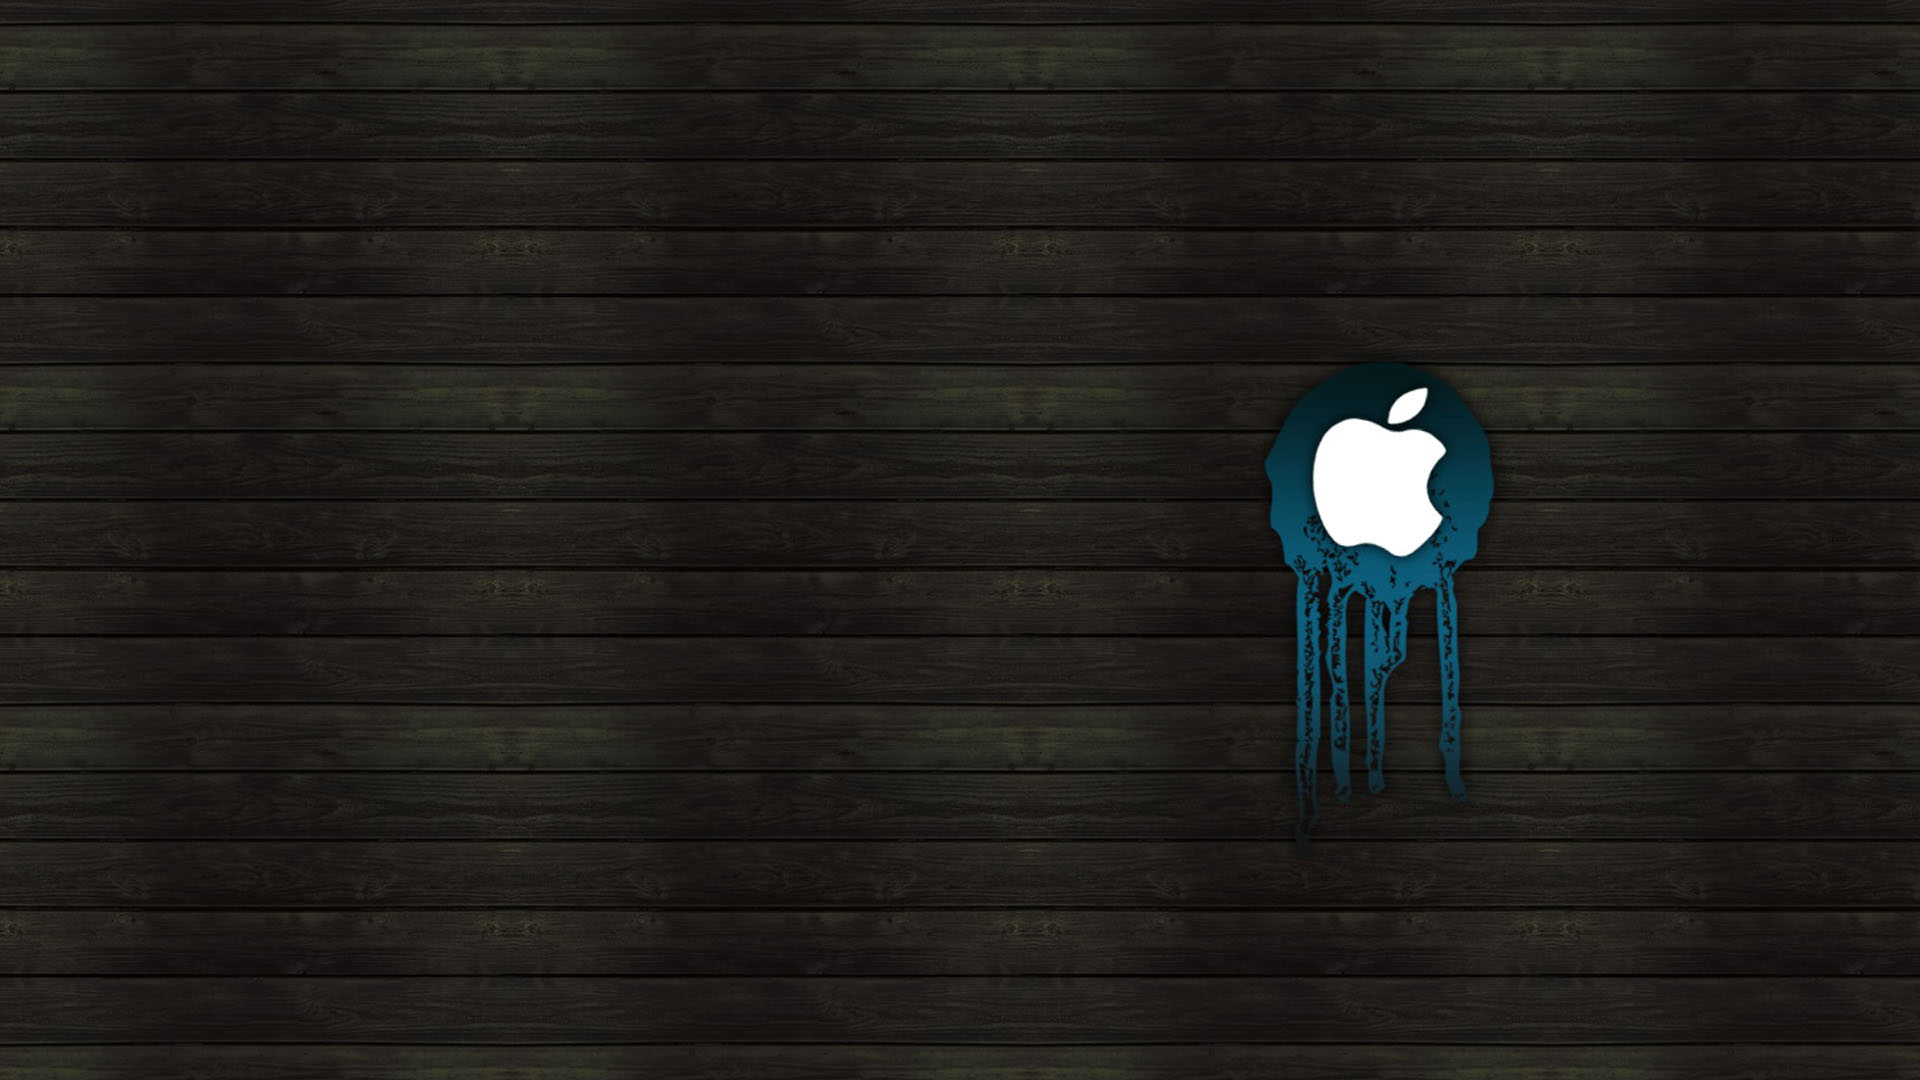 Apple Macbook Pro Desktop Background HD Wallpaper For Your